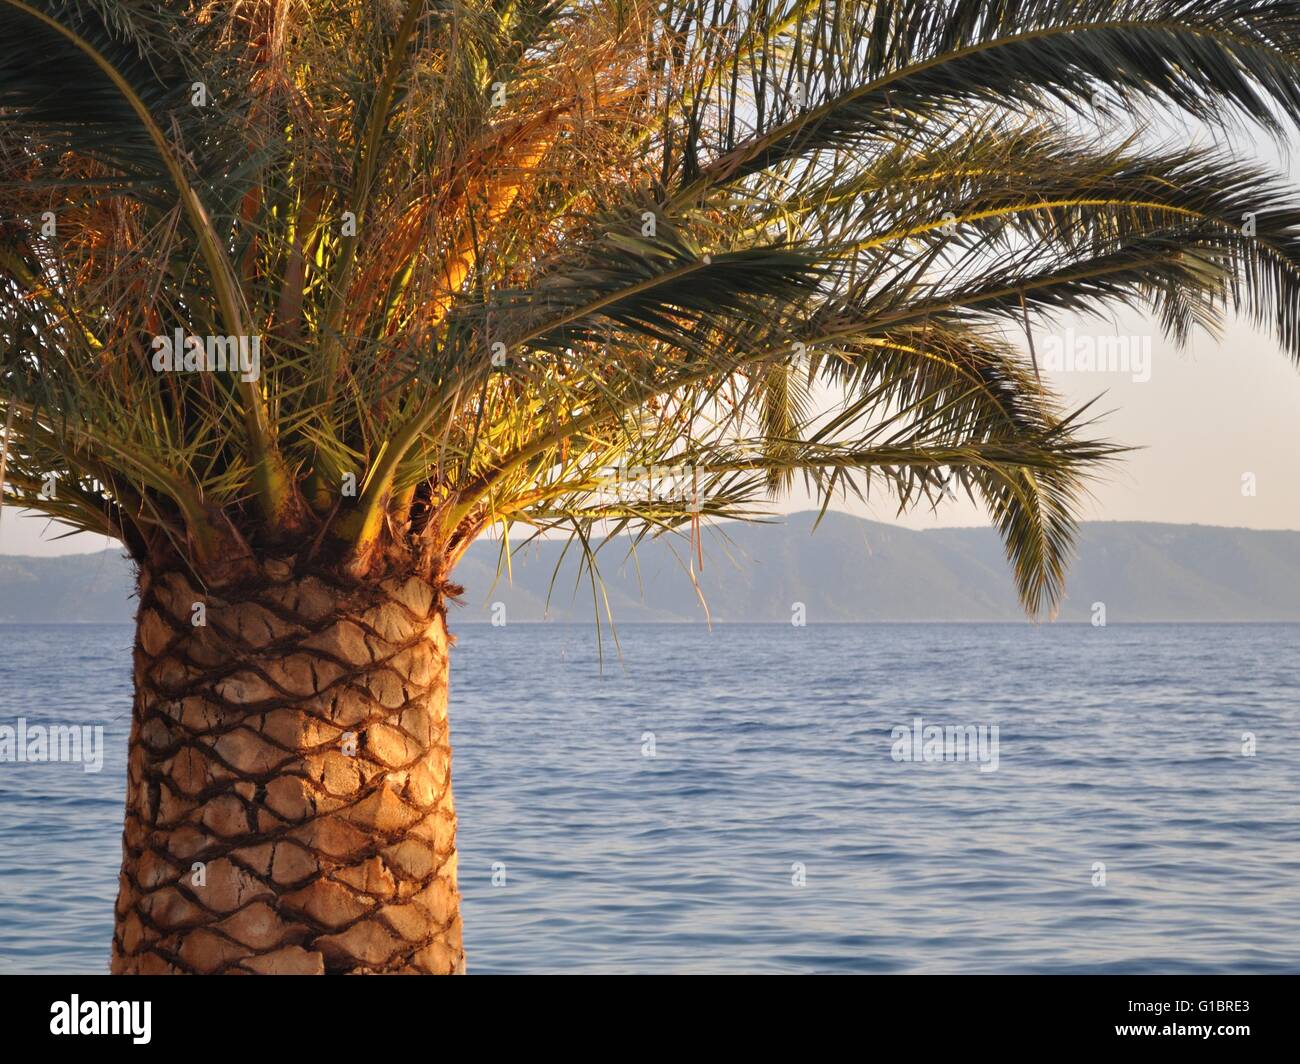 Palm Tree sul lato sinistro di immagine con il mare adriatico sullo sfondo. Podgora, Croazia Foto Stock